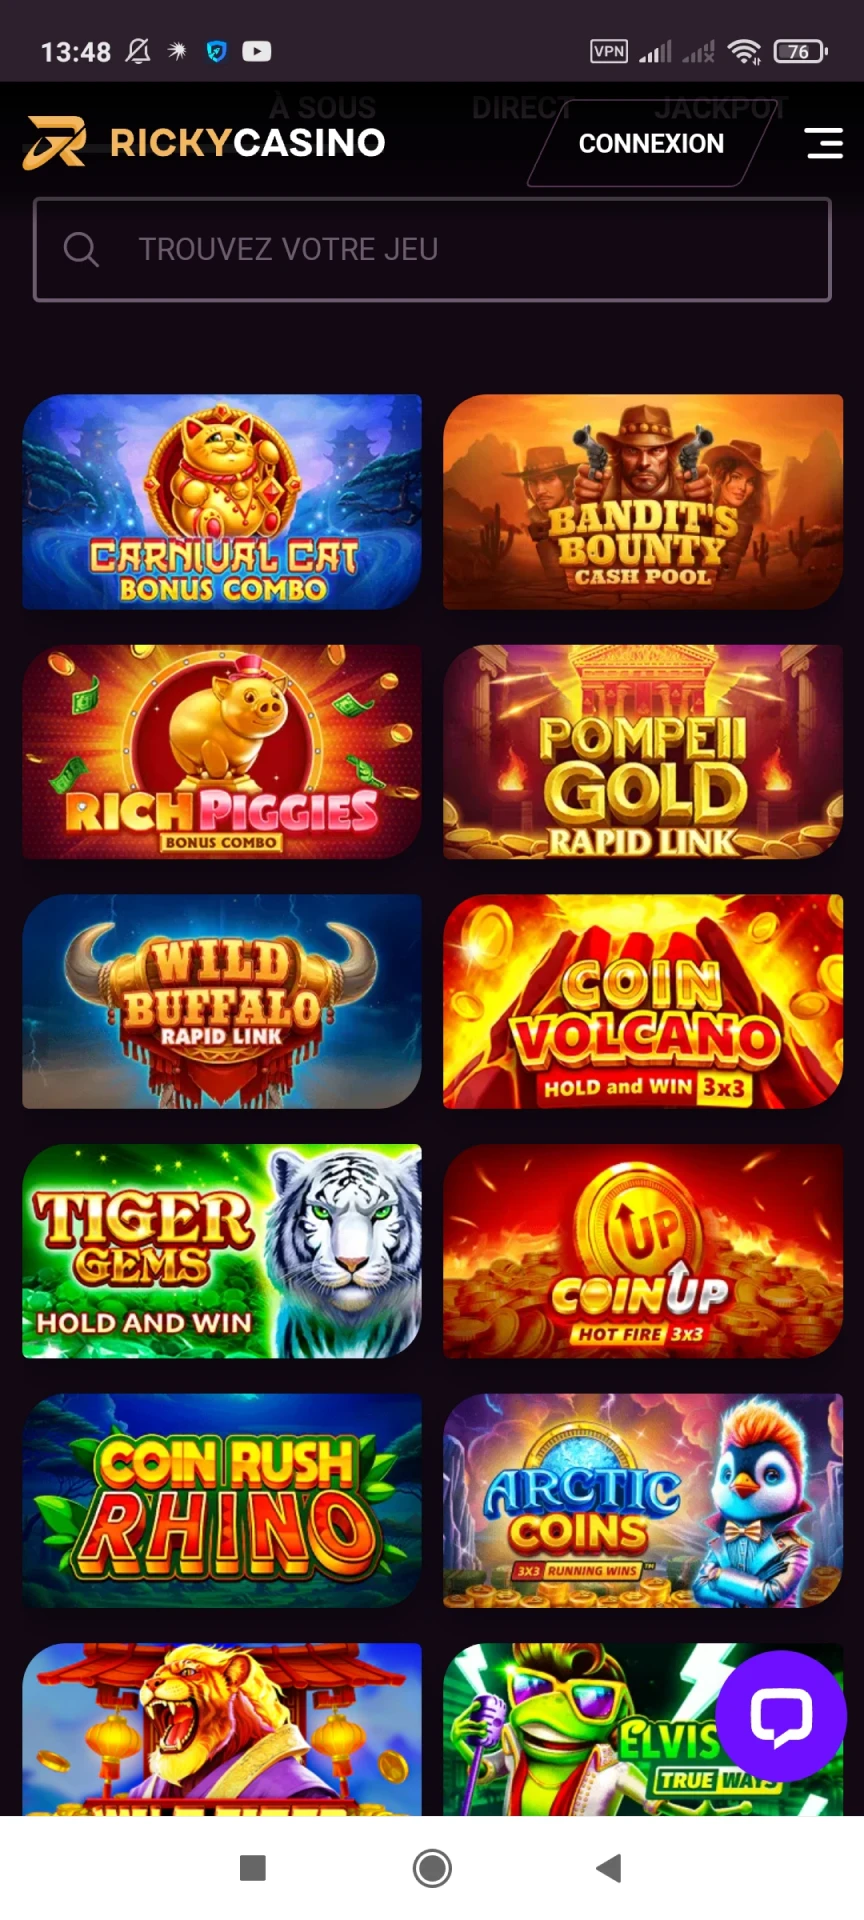 Visitez la page des jeux de l'application Ricky Casino.